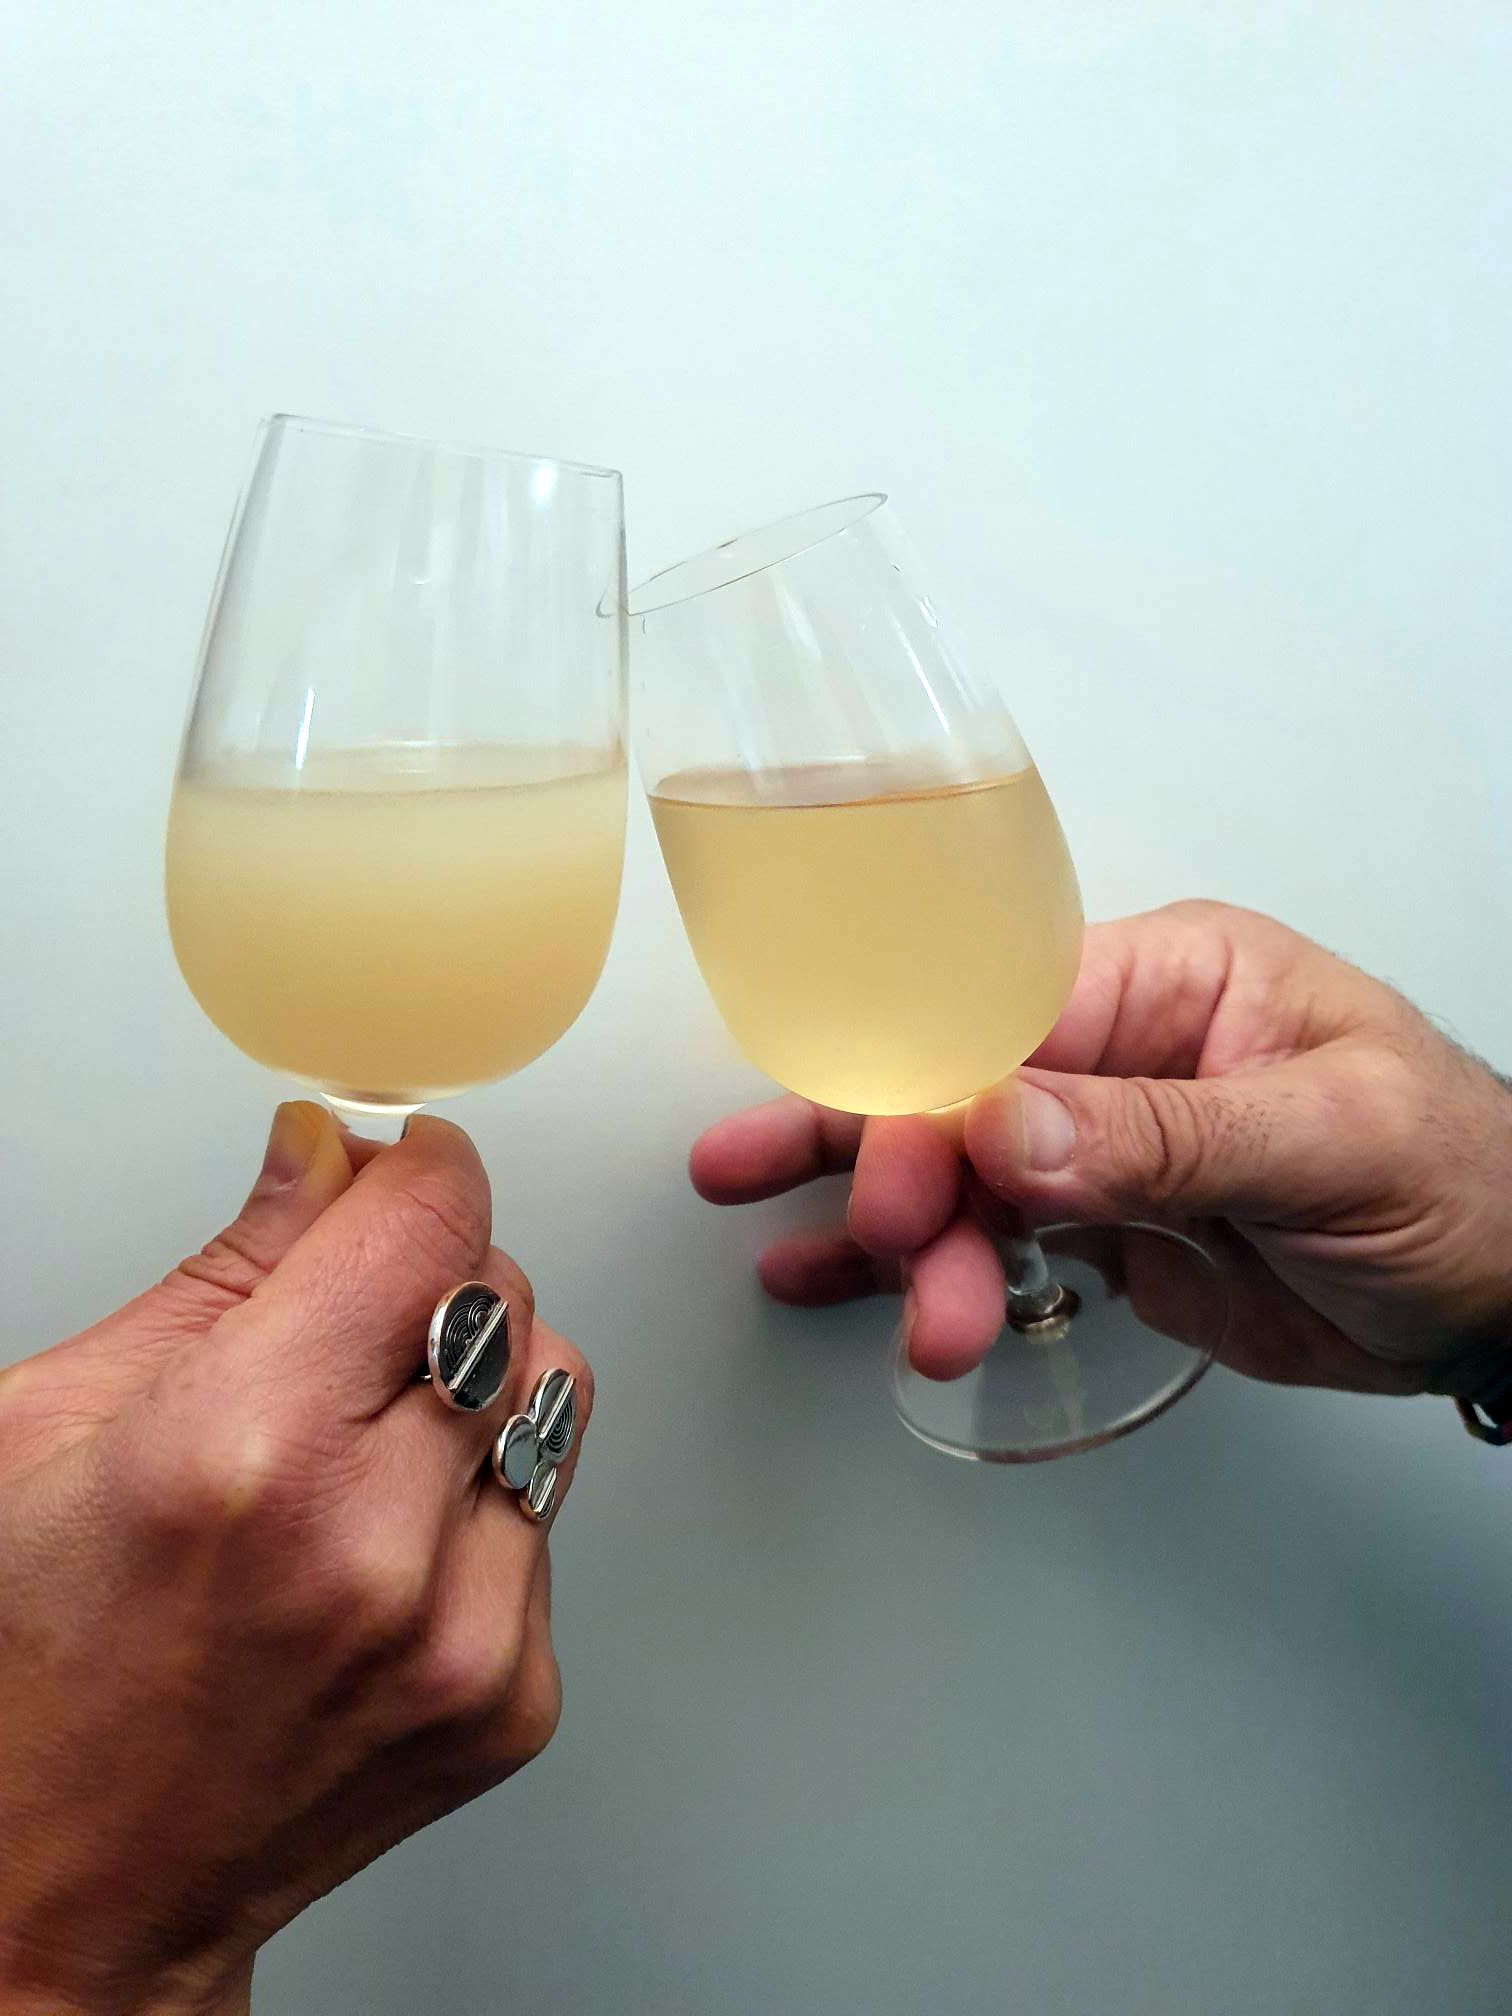 Champagne La Marne Viticole Reims Vendanges on ne peut plus saines et fermentations quasi achevées dans toutes les cuveries, il est temps de faire le point sur les vins issus de cette dernière campagne.